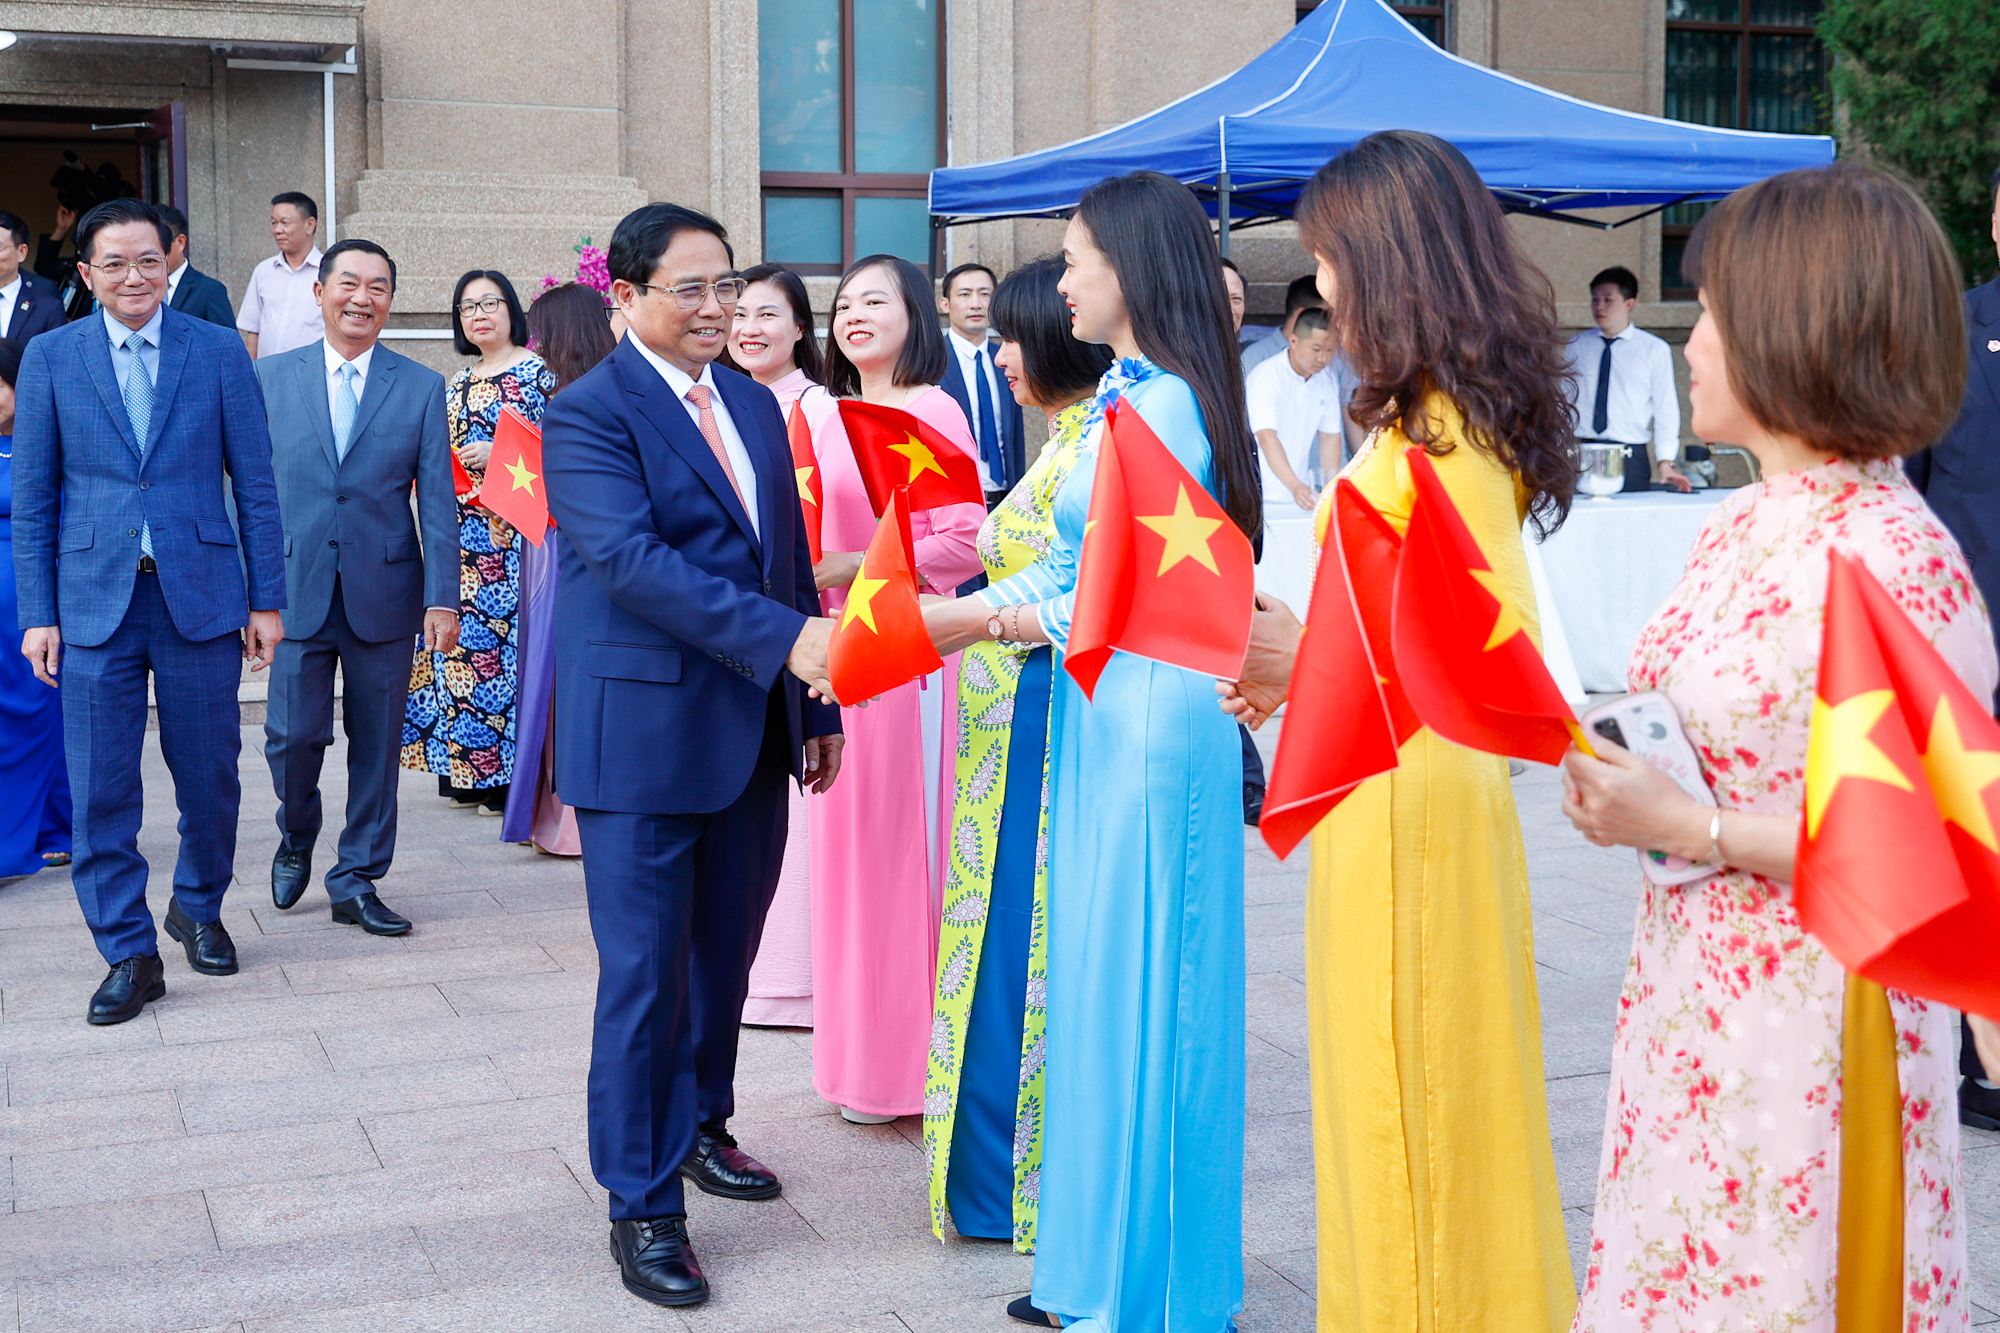 Cán bộ, nhân viên Đại sứ quán và bà con Việt kiều nồng nhiệt chào đón Thủ tướng - Ảnh: VGP/Nhật Bắc